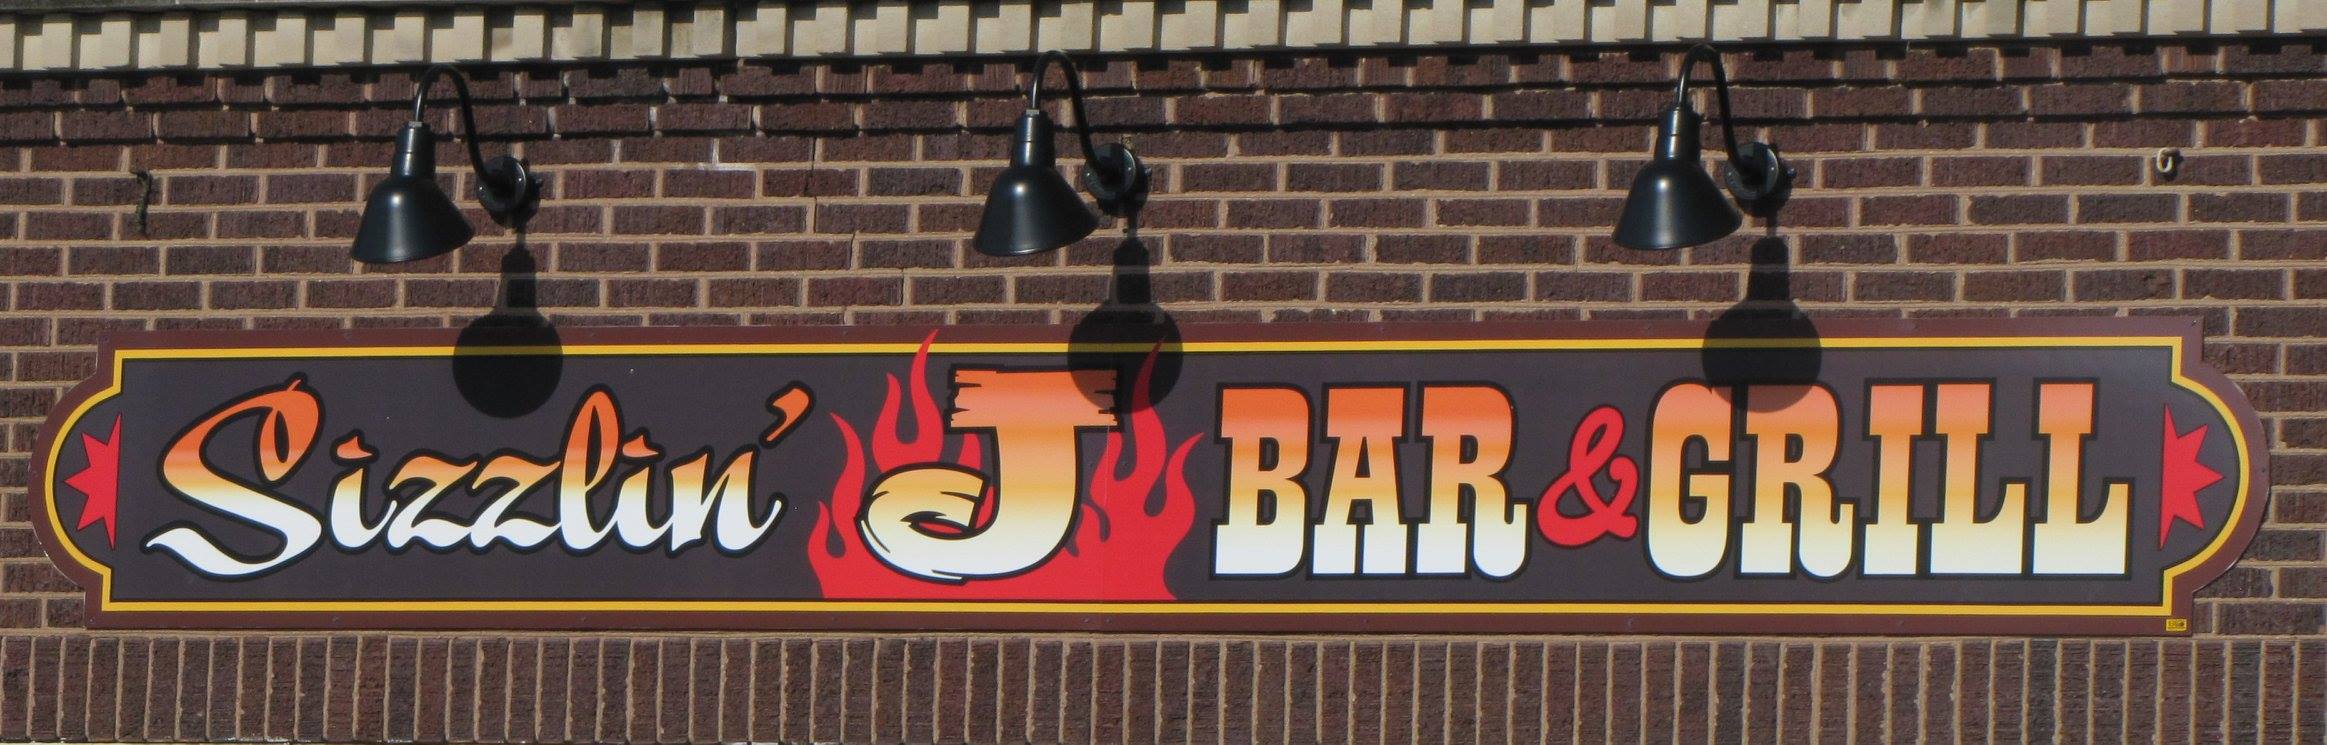 Sizzlin' J Bar & Grill